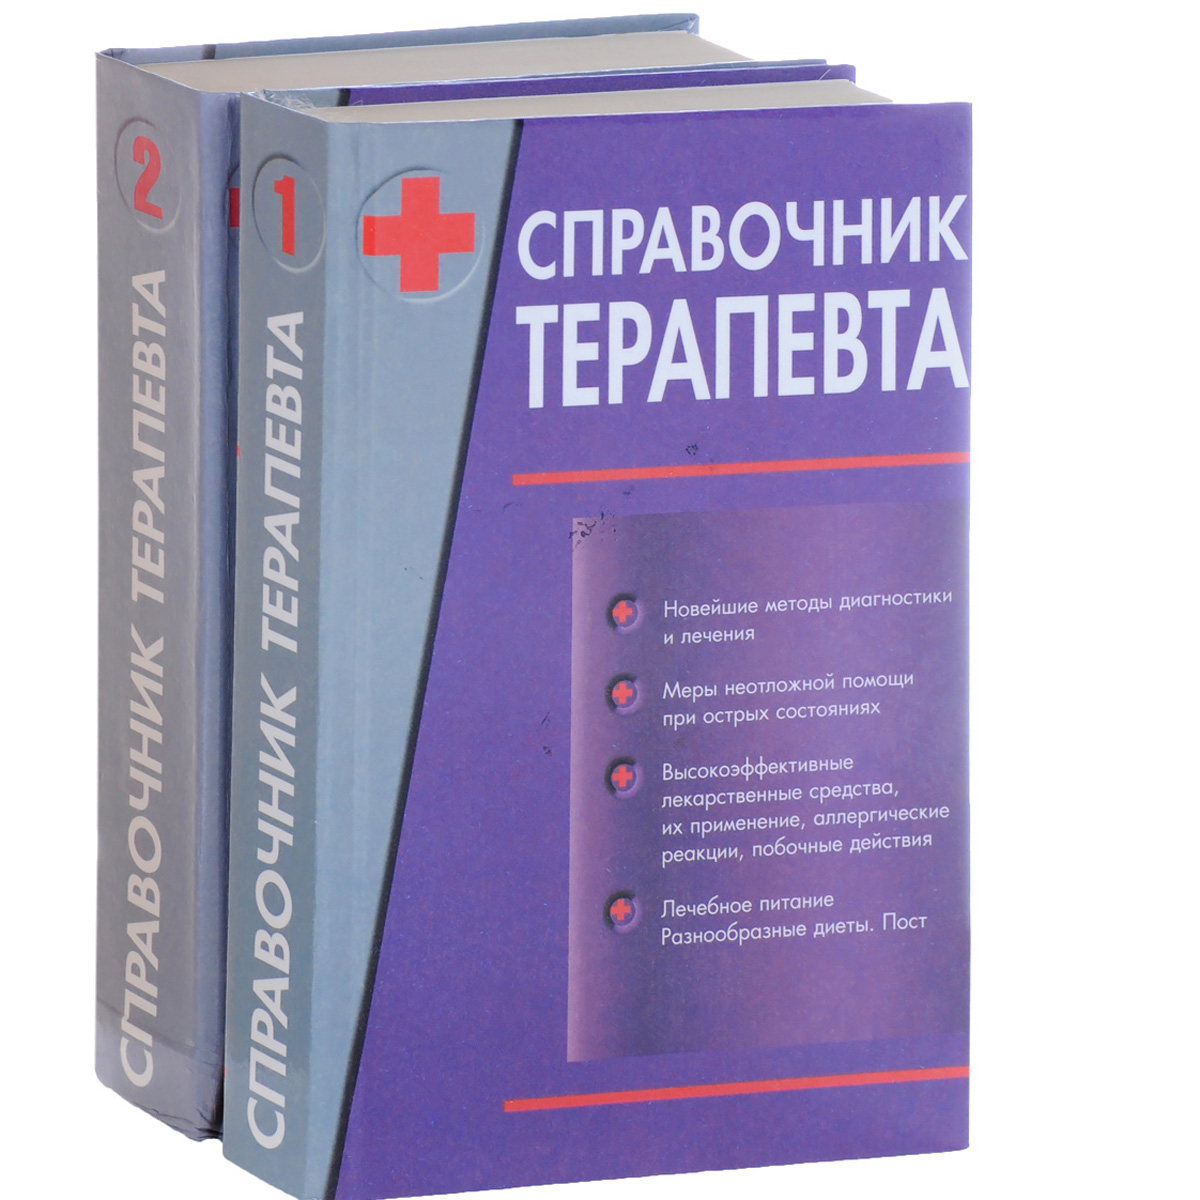 Справочник терапевта. В 2 томах. Том 1, 2 (комплект из 2 книг)